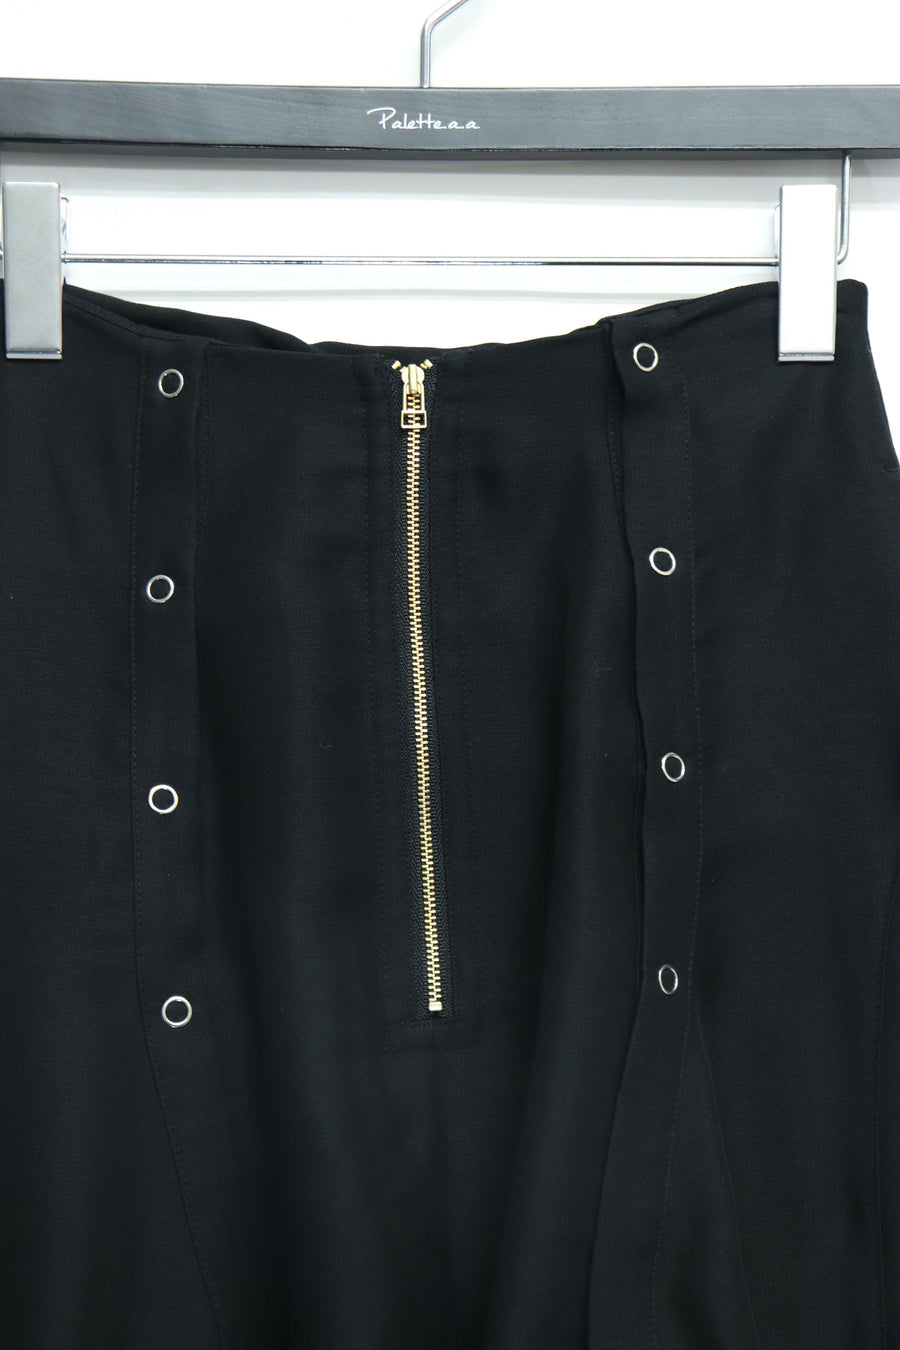 AKIKOAOKI  chemise skirt-03